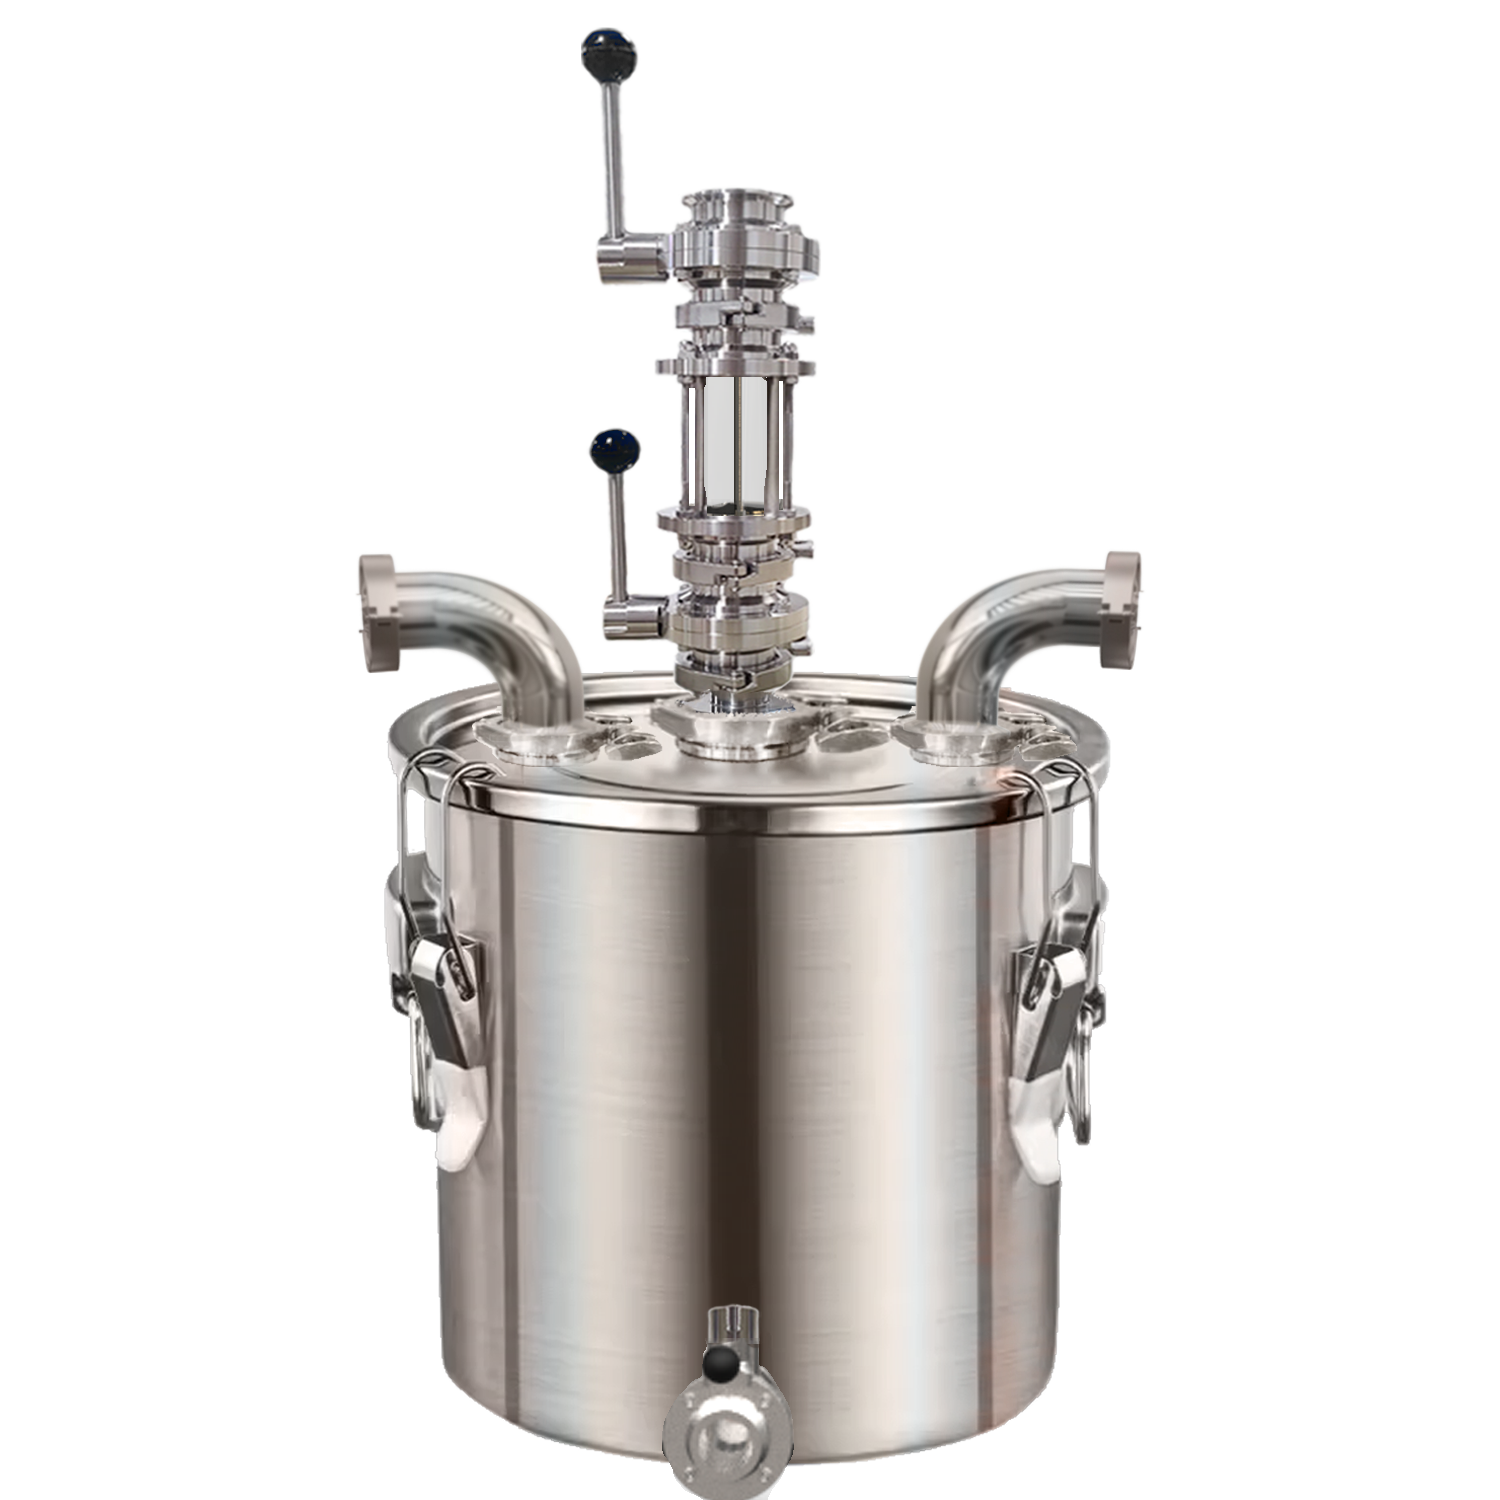 Thumper(Special accessories for producing Rum)-21L/50L/72L/98L/170L/228L - Hooloo Distilling Equipment Supply